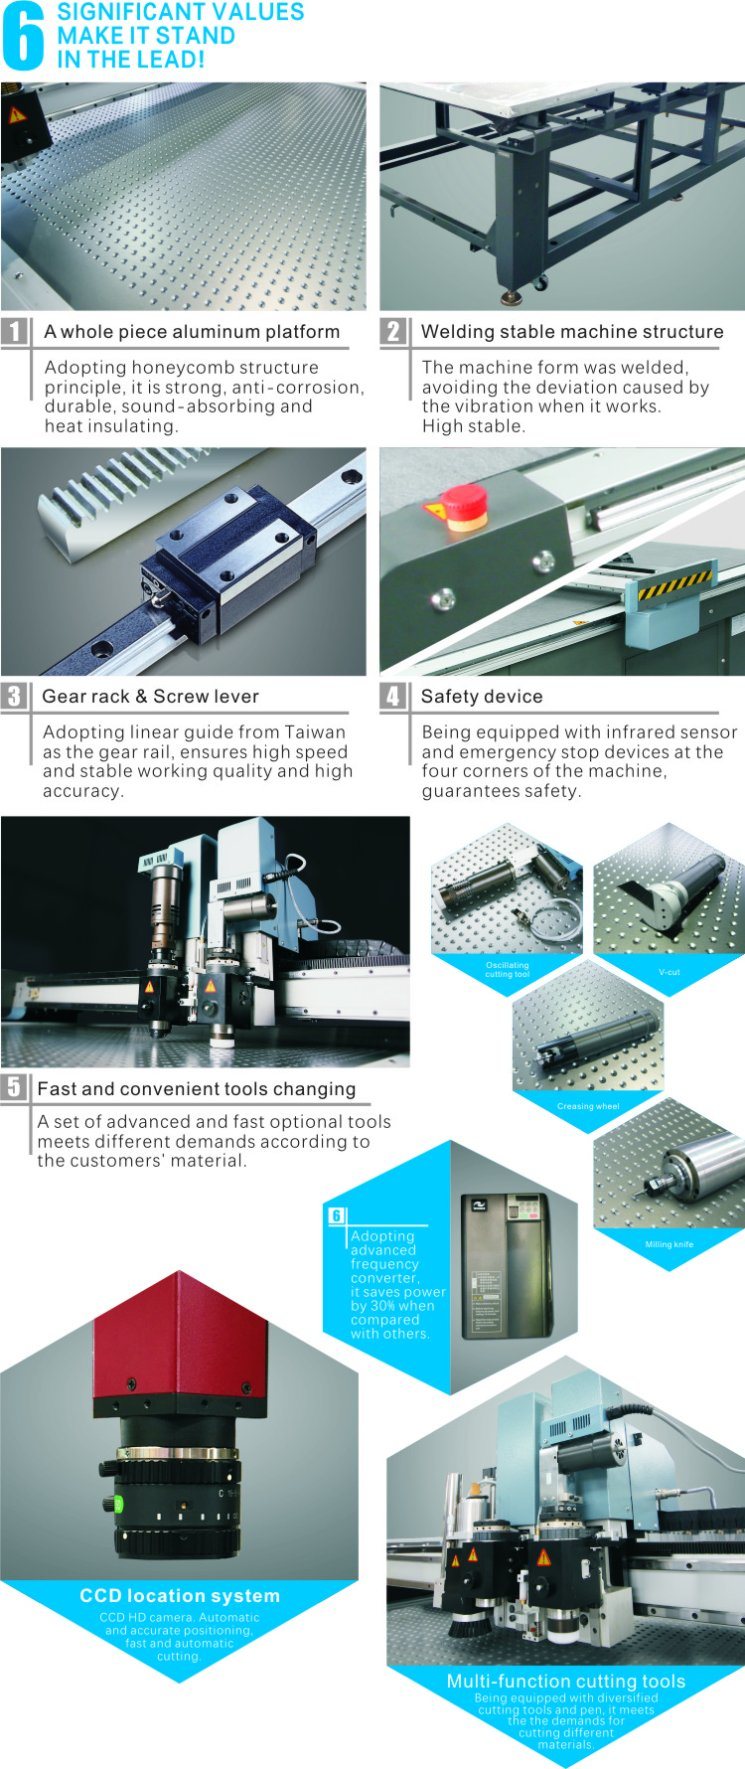 Ruizhou Professional Manufacturer Digital Control Paper Cutter